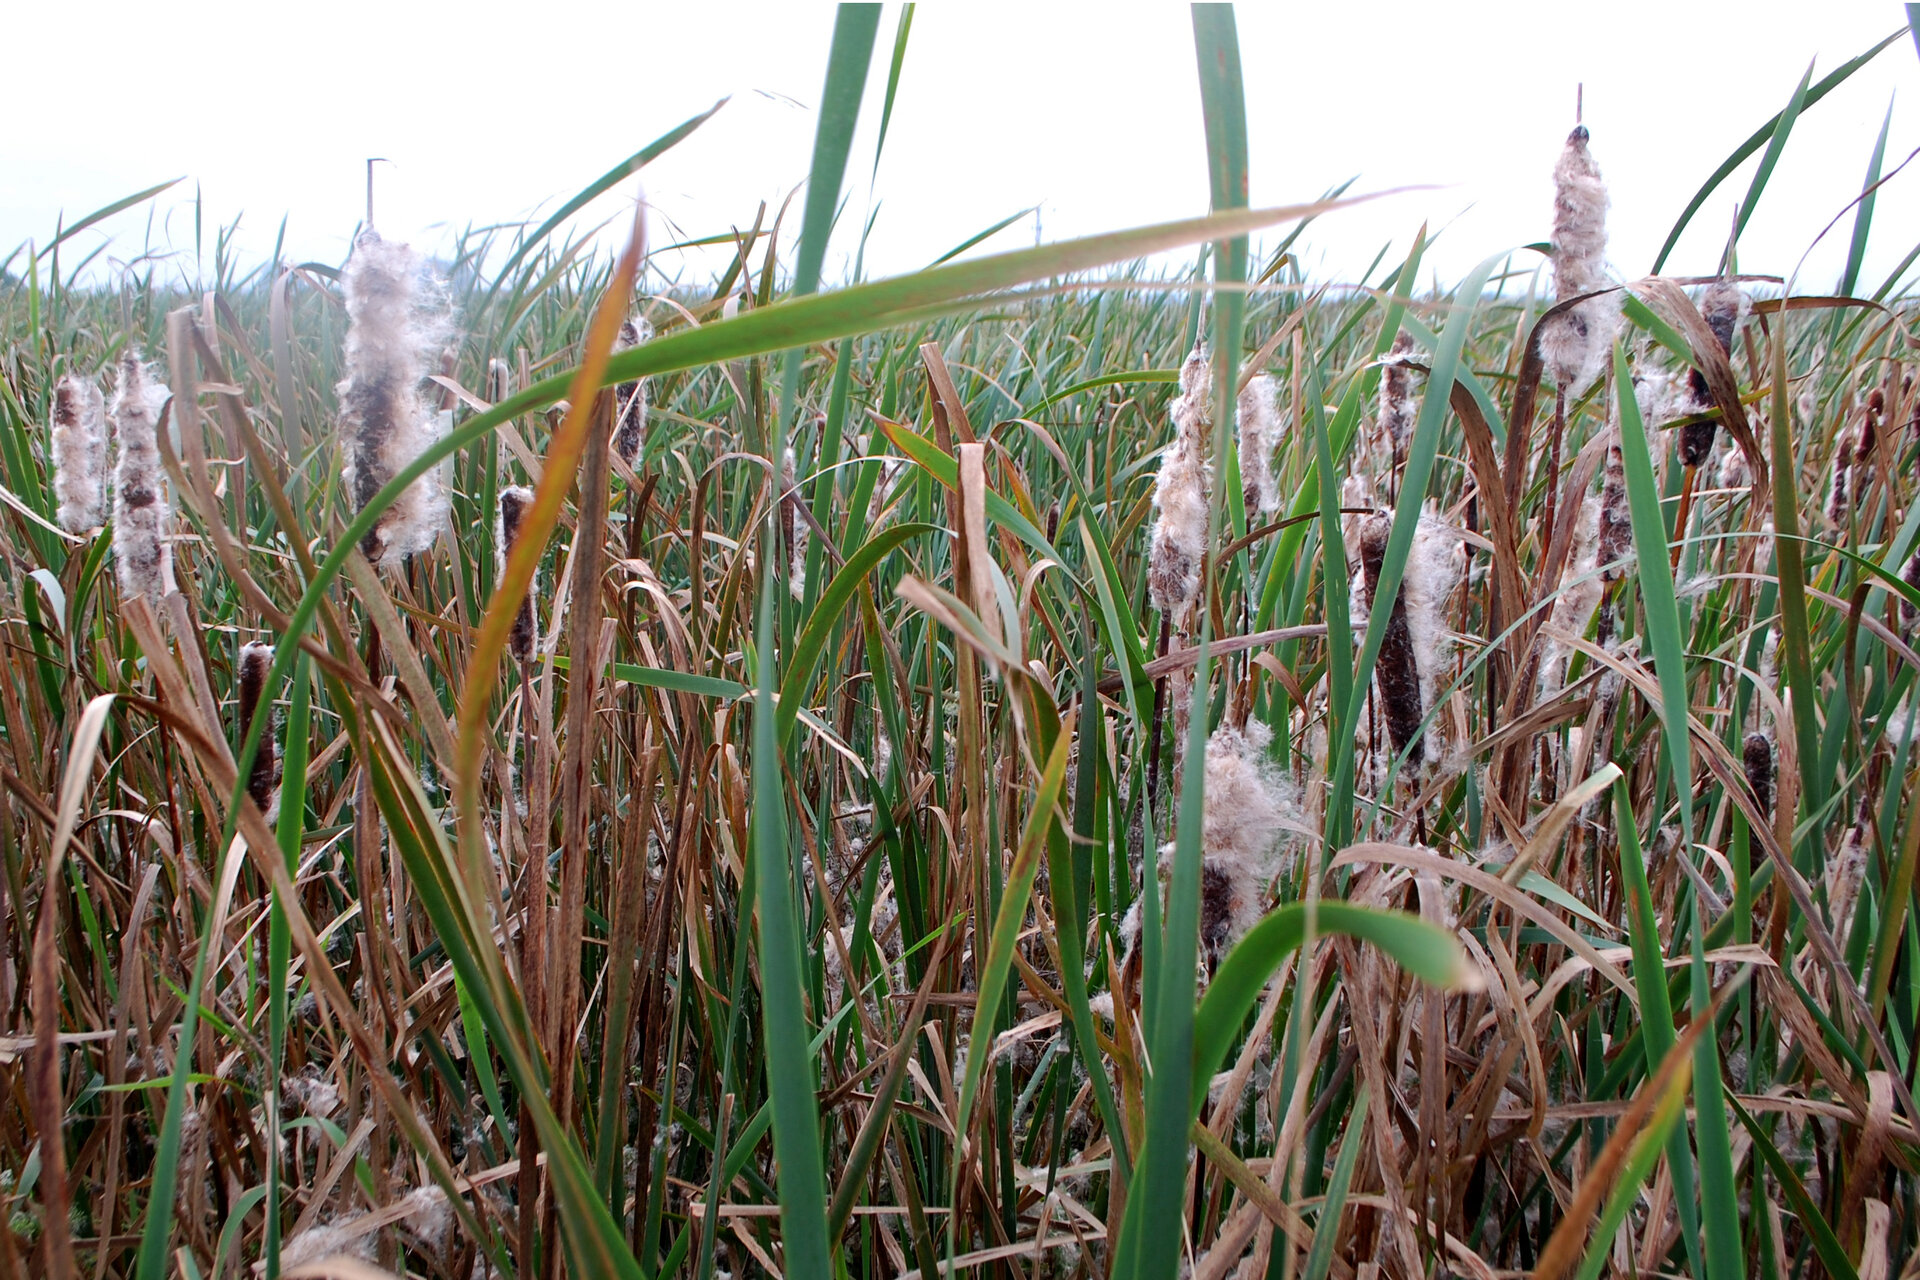 Die Wasser- und Sumpfpflanze Typha wächst schnell und insbesondere in Moorgebieten, die im Nordwesten Deutschlands häufig sind. Fotos: 3N Kompetenzzentrum e.V.